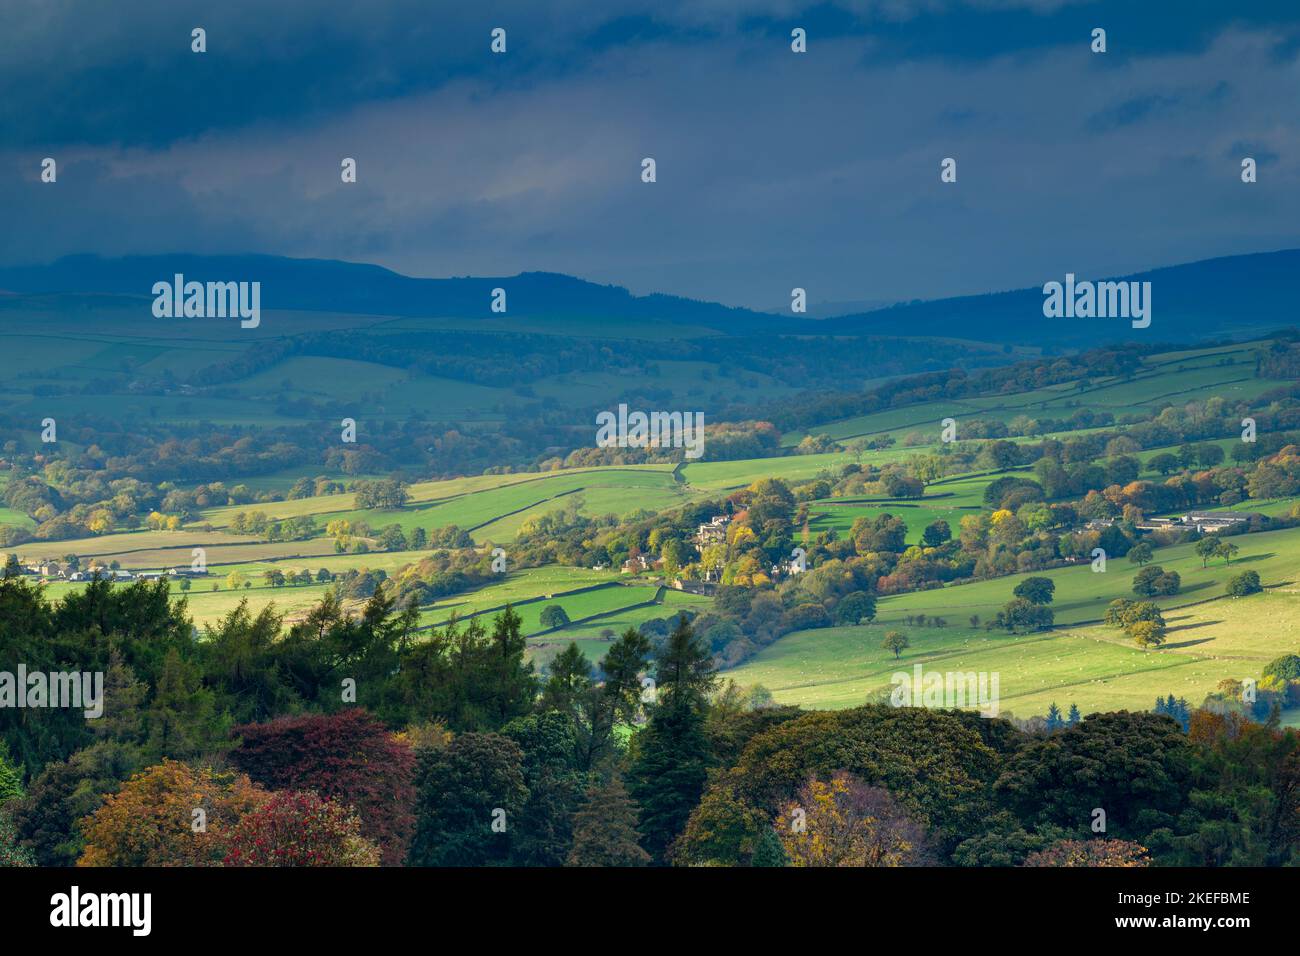 Paysage rural pittoresque et ensoleillé de Wharfedale (vallée verdoyante, collines ondulantes, lumière du soleil sur les terres agricoles, couleurs d'automne) - West Yorkshire, Angleterre, Royaume-Uni. Banque D'Images